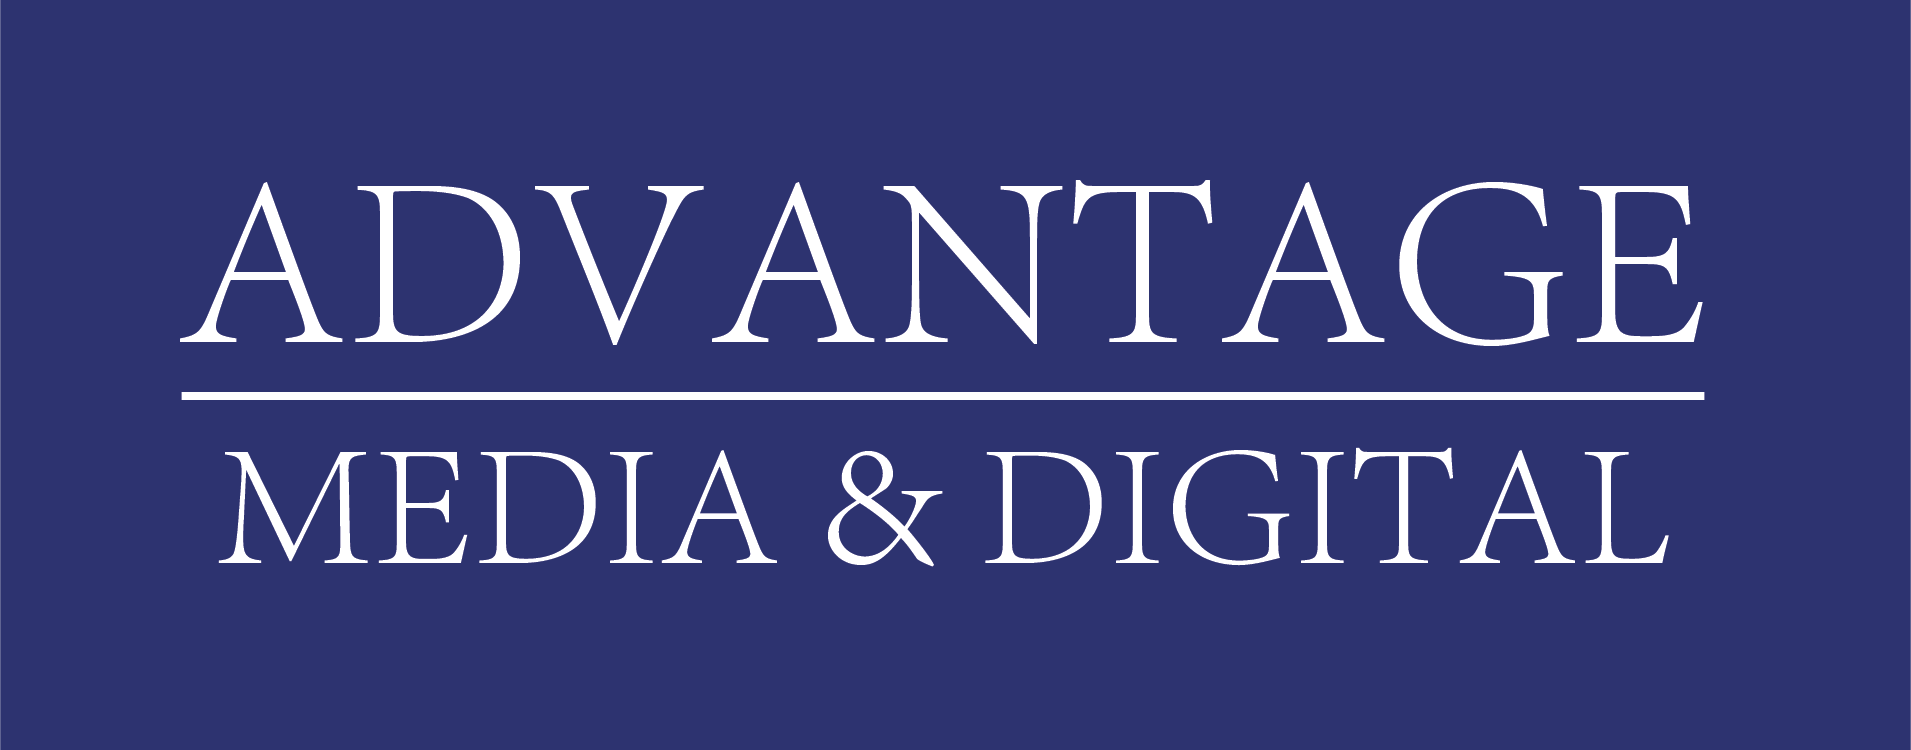 NEW Advantage Media logo (2)